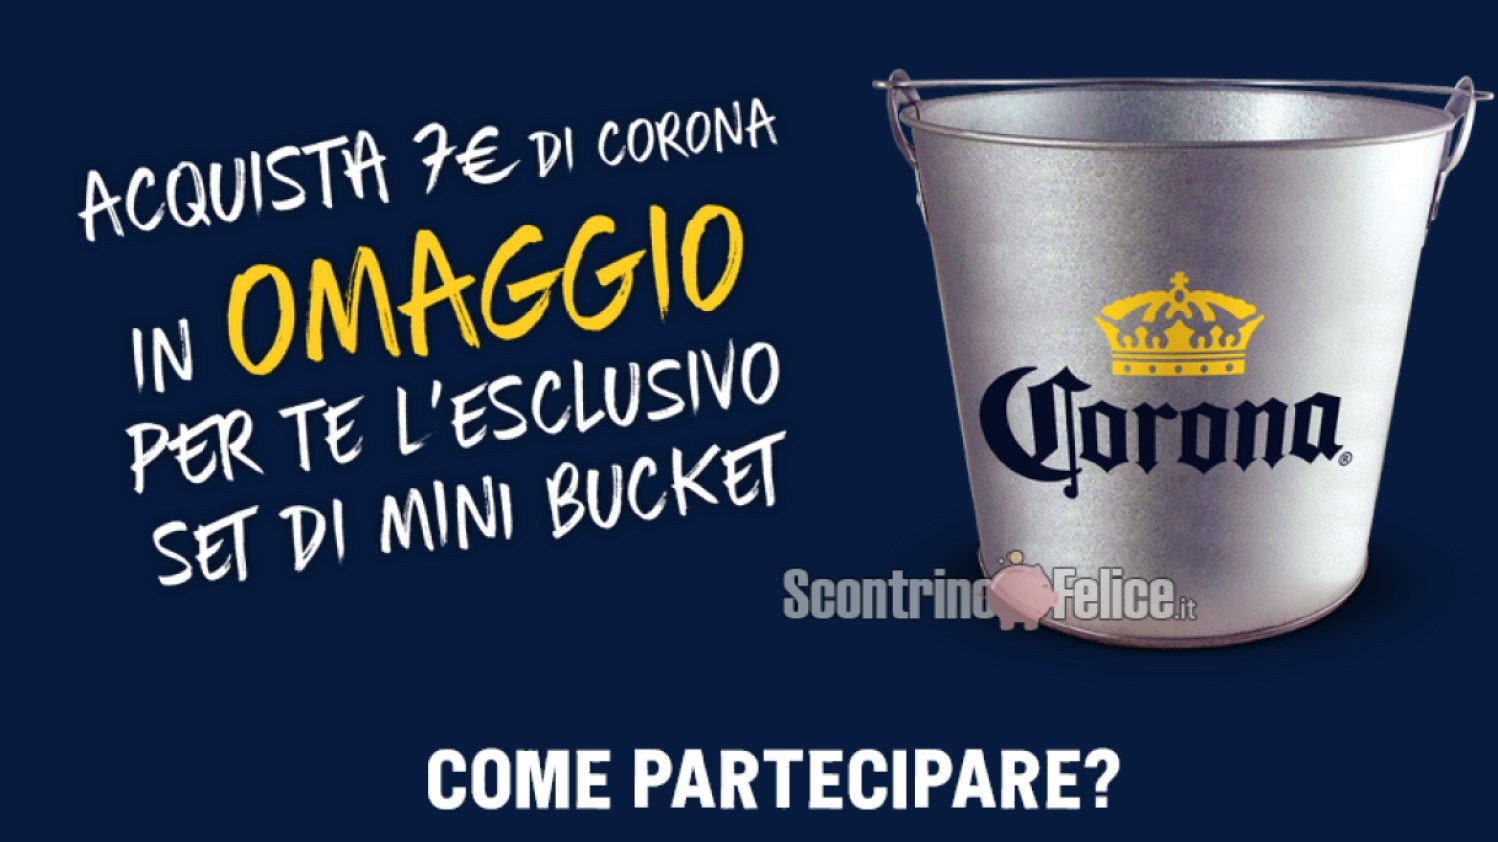 Premio certo “L’aperitivo con Corona”: ricevi in regalo un set di 3 mini-bucket brandizzati